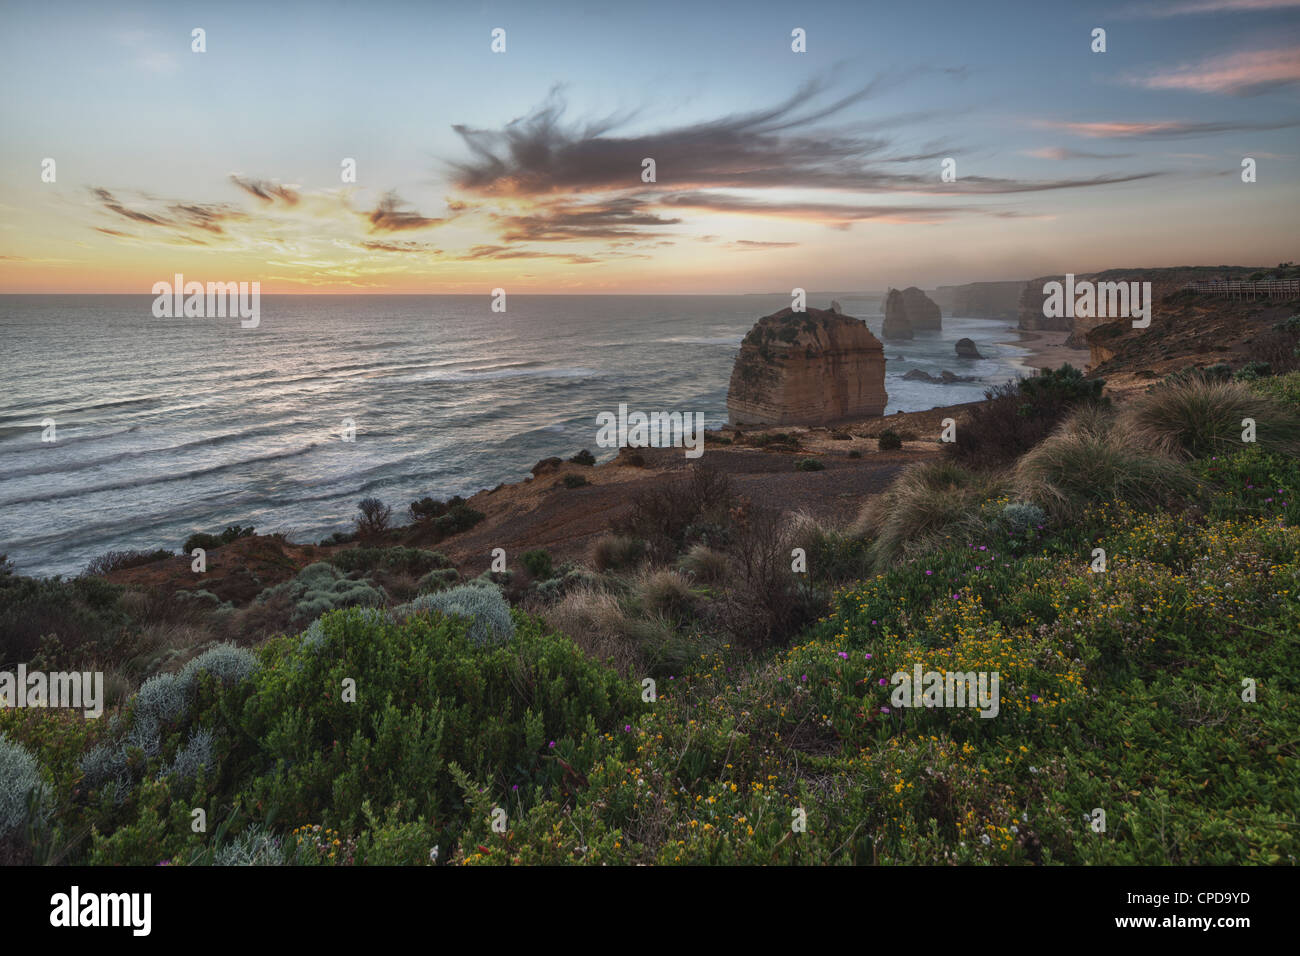 Les douze apôtres, Port Campbell National Park, Great Ocean Road, Victoria, Australie Banque D'Images